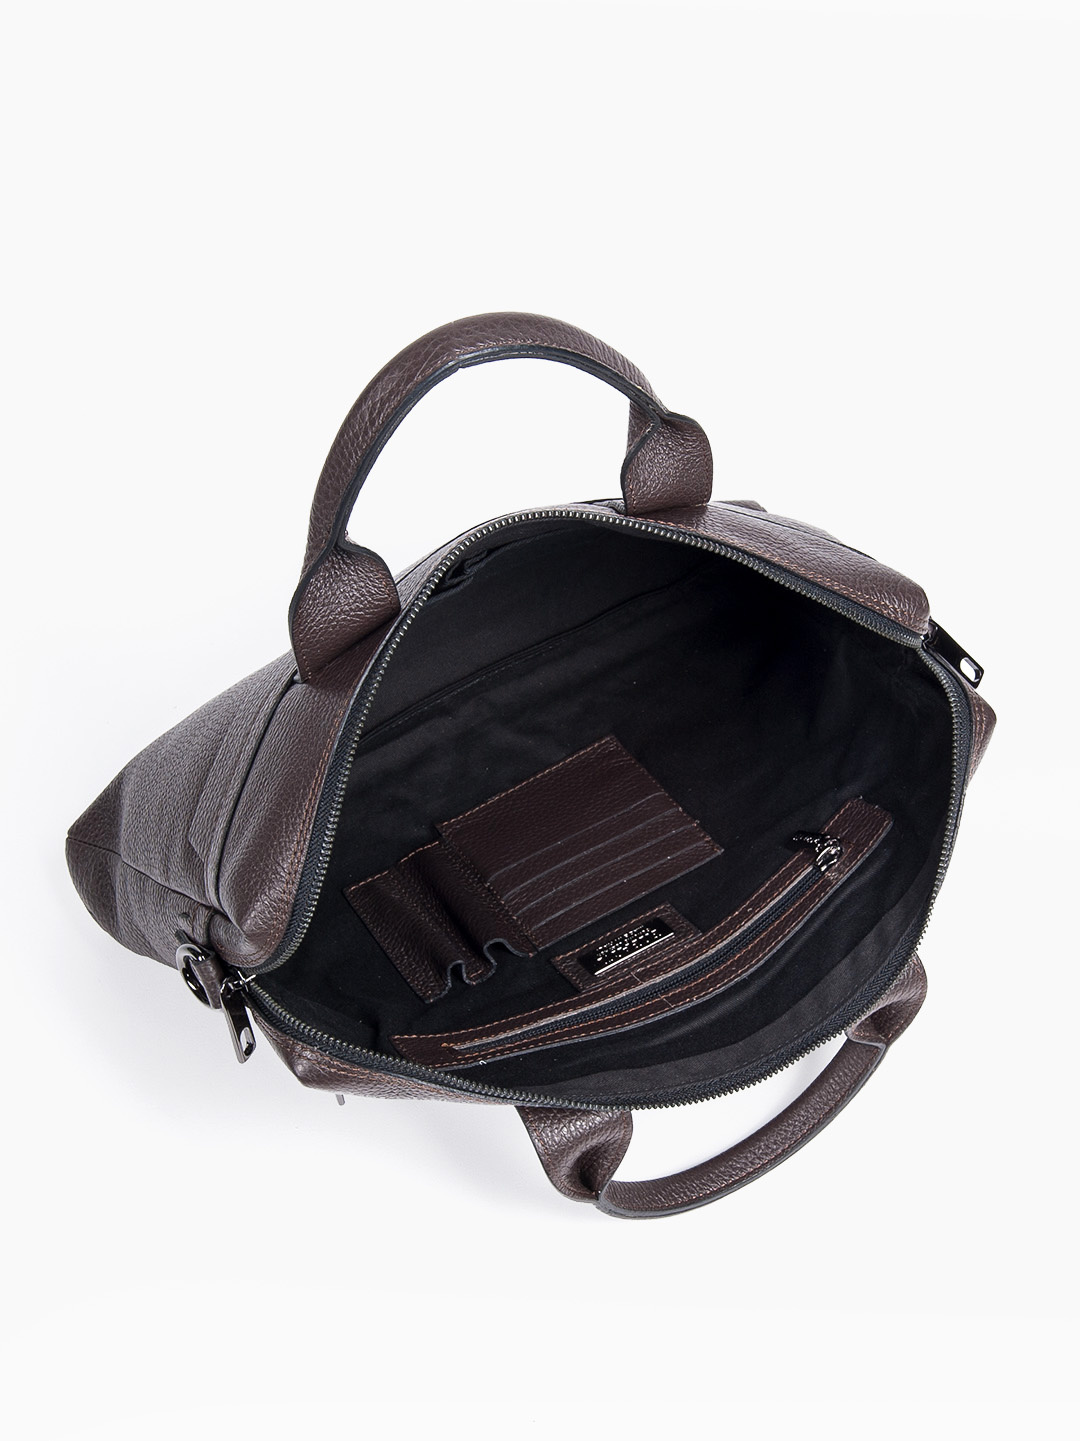 Фото Деловая сумка из зернистой кожи коричневого цвета Деловые сумки (А4)